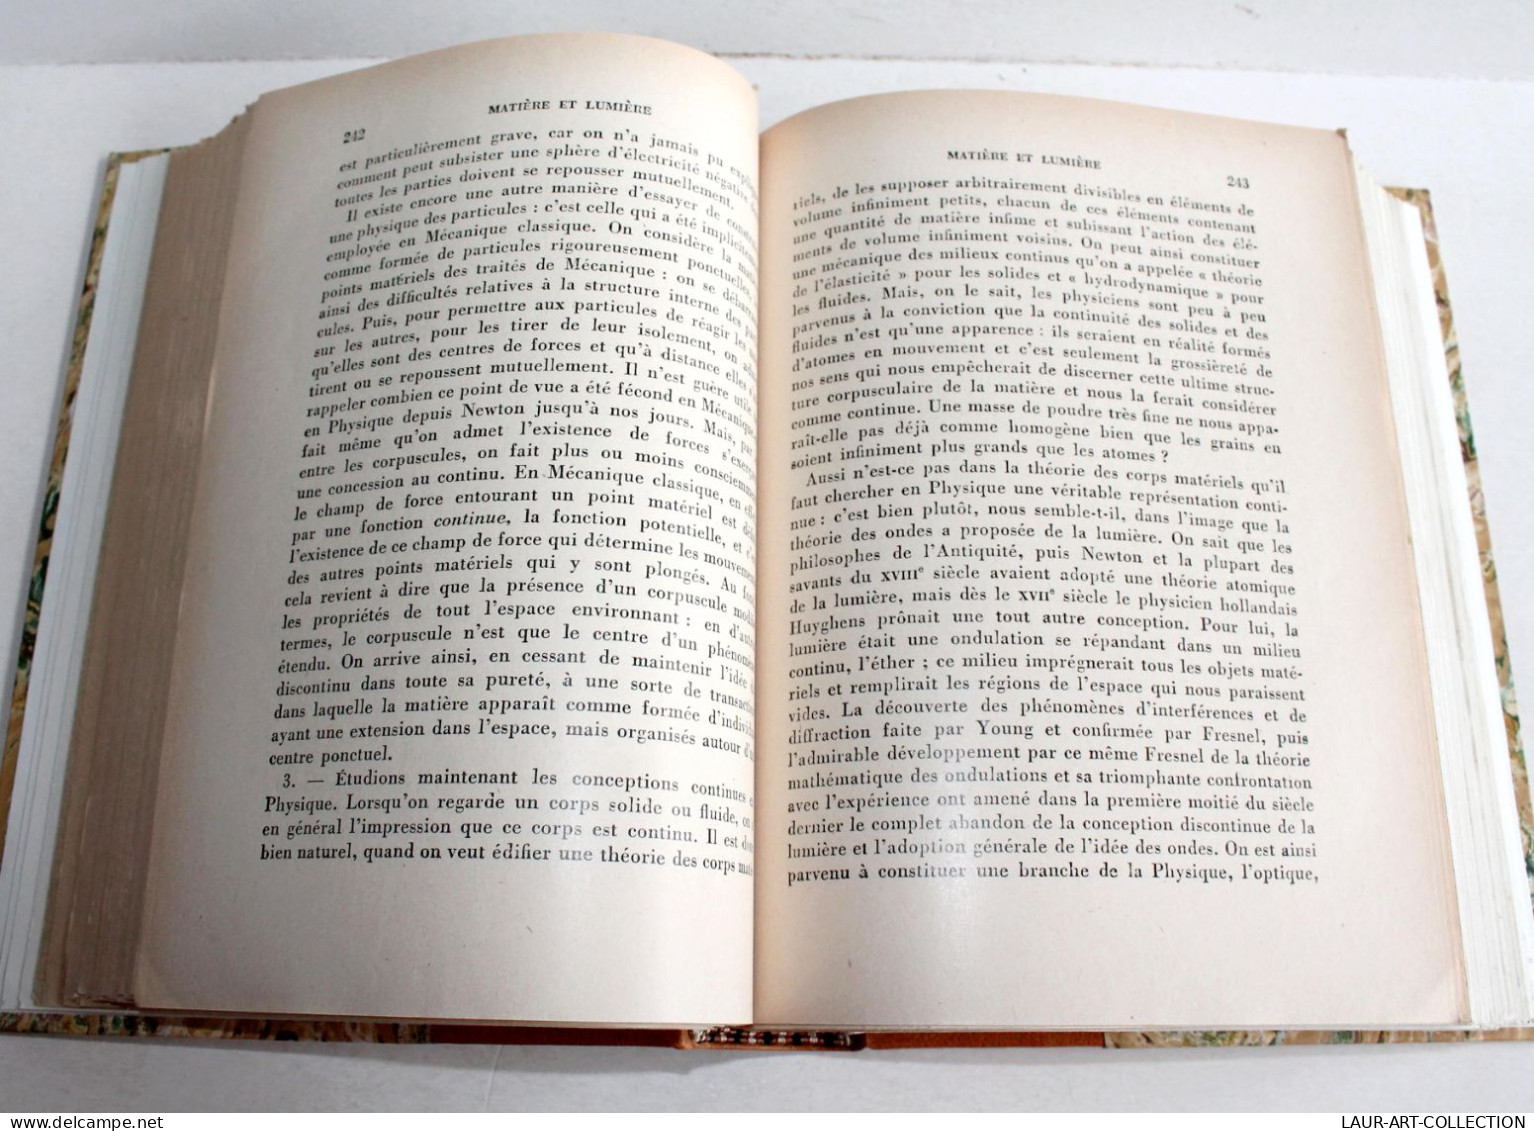 ENVOI D'AUTEUR LOUIS DE BROGLIE + MATIERE & LUMIERE + PHYSIQUE & MICROPHYSIQUE 1937 / ANCIEN LIVRE XXe SIECLE (2204.32) - Gesigneerde Boeken